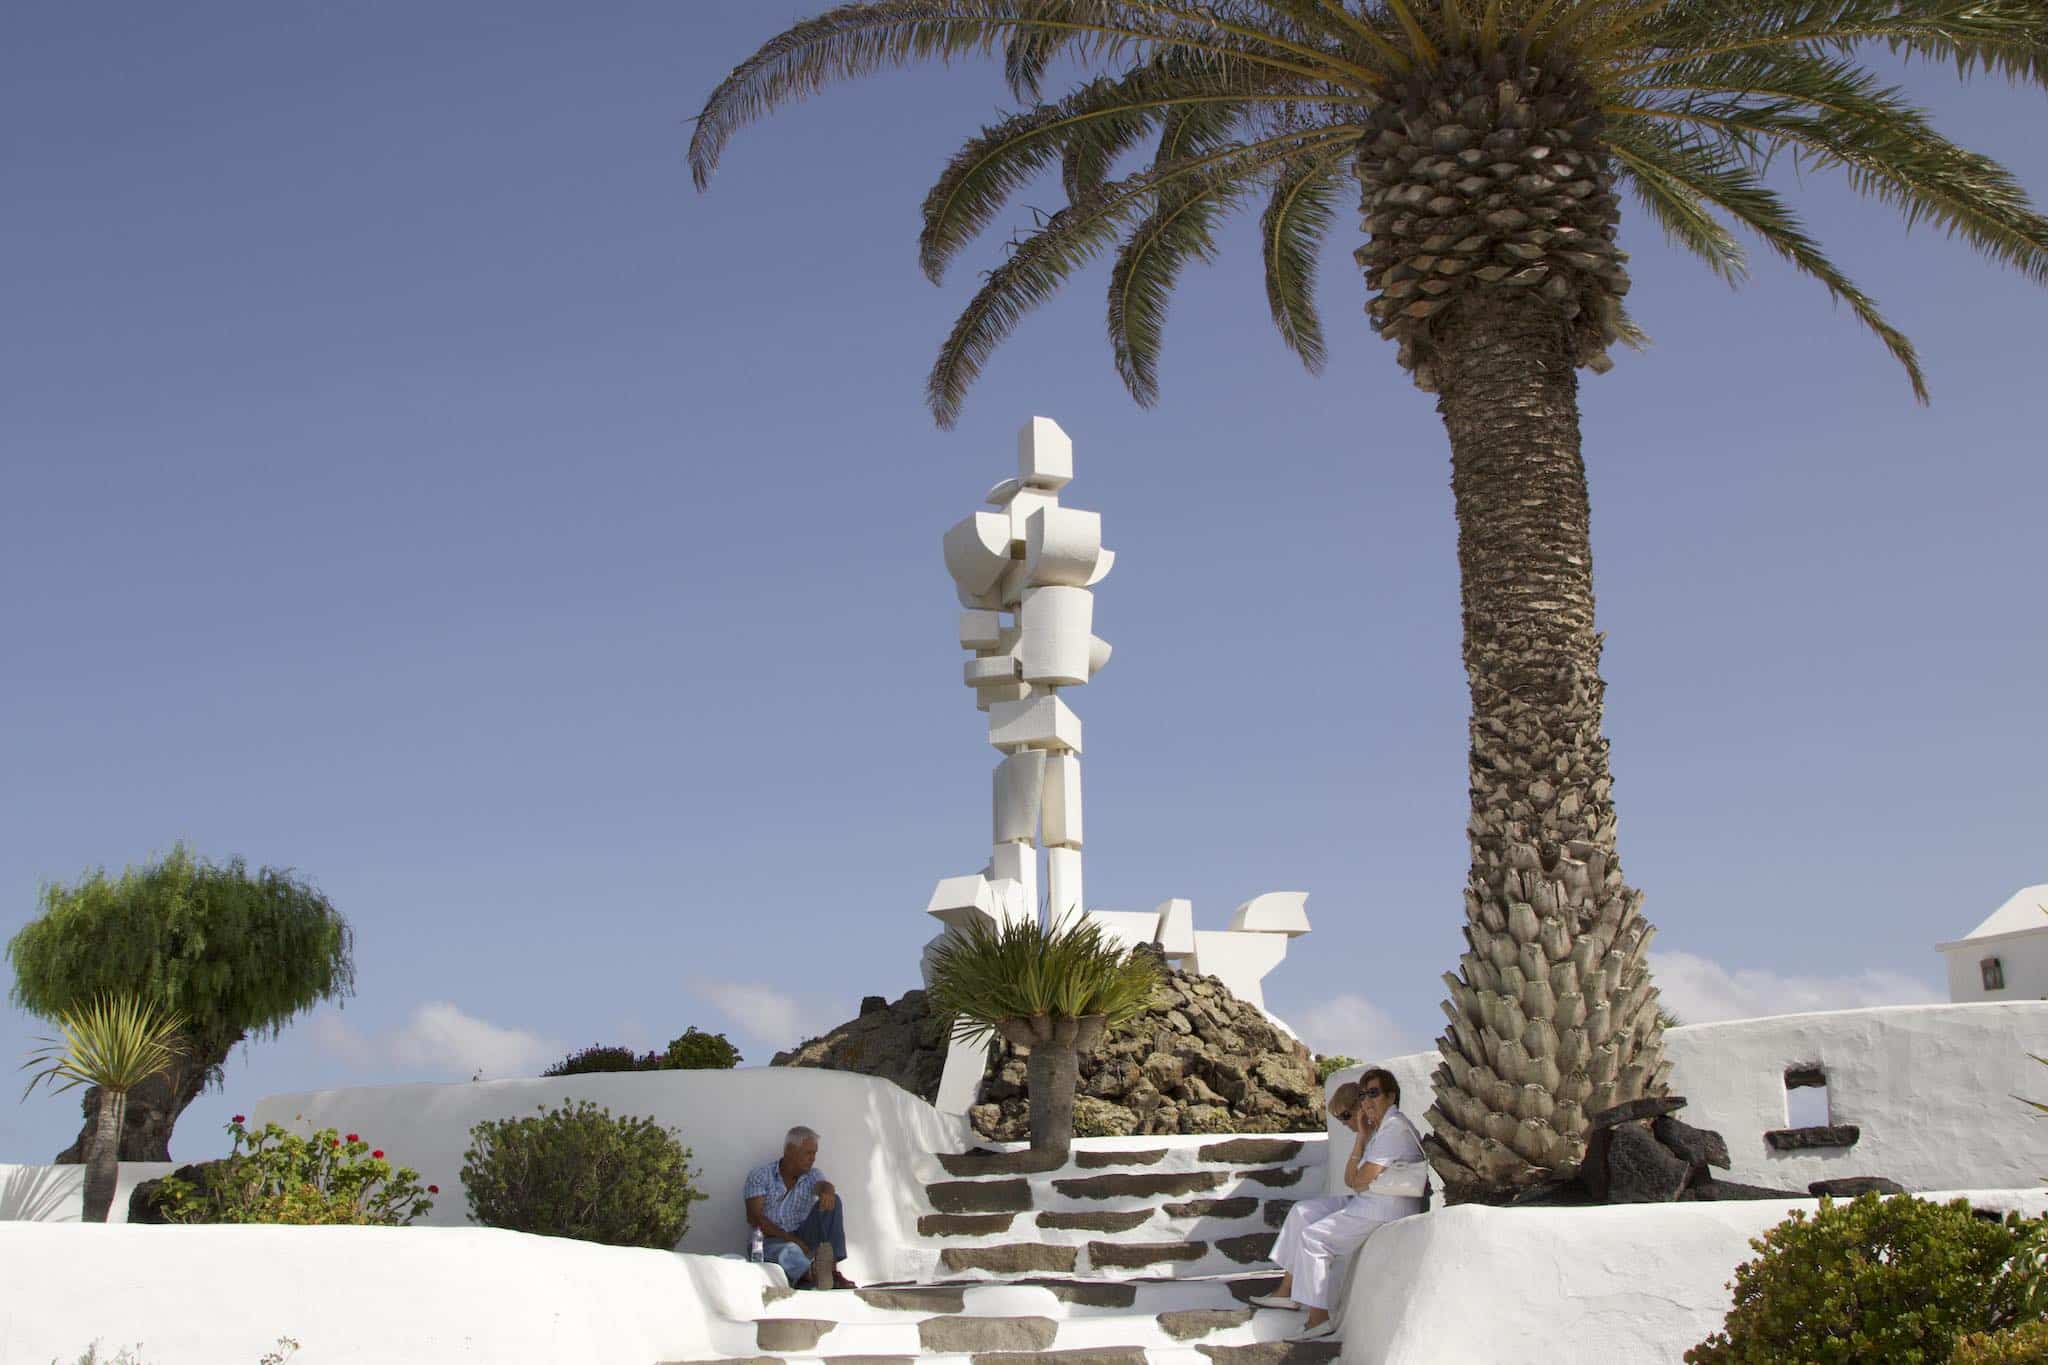 Casa-Museo del Campesino: Con la institución, el artista César Manrique quiso rendir homenaje a los agricultores de Lanzarote. Foto: Sascha Tegtmeyer